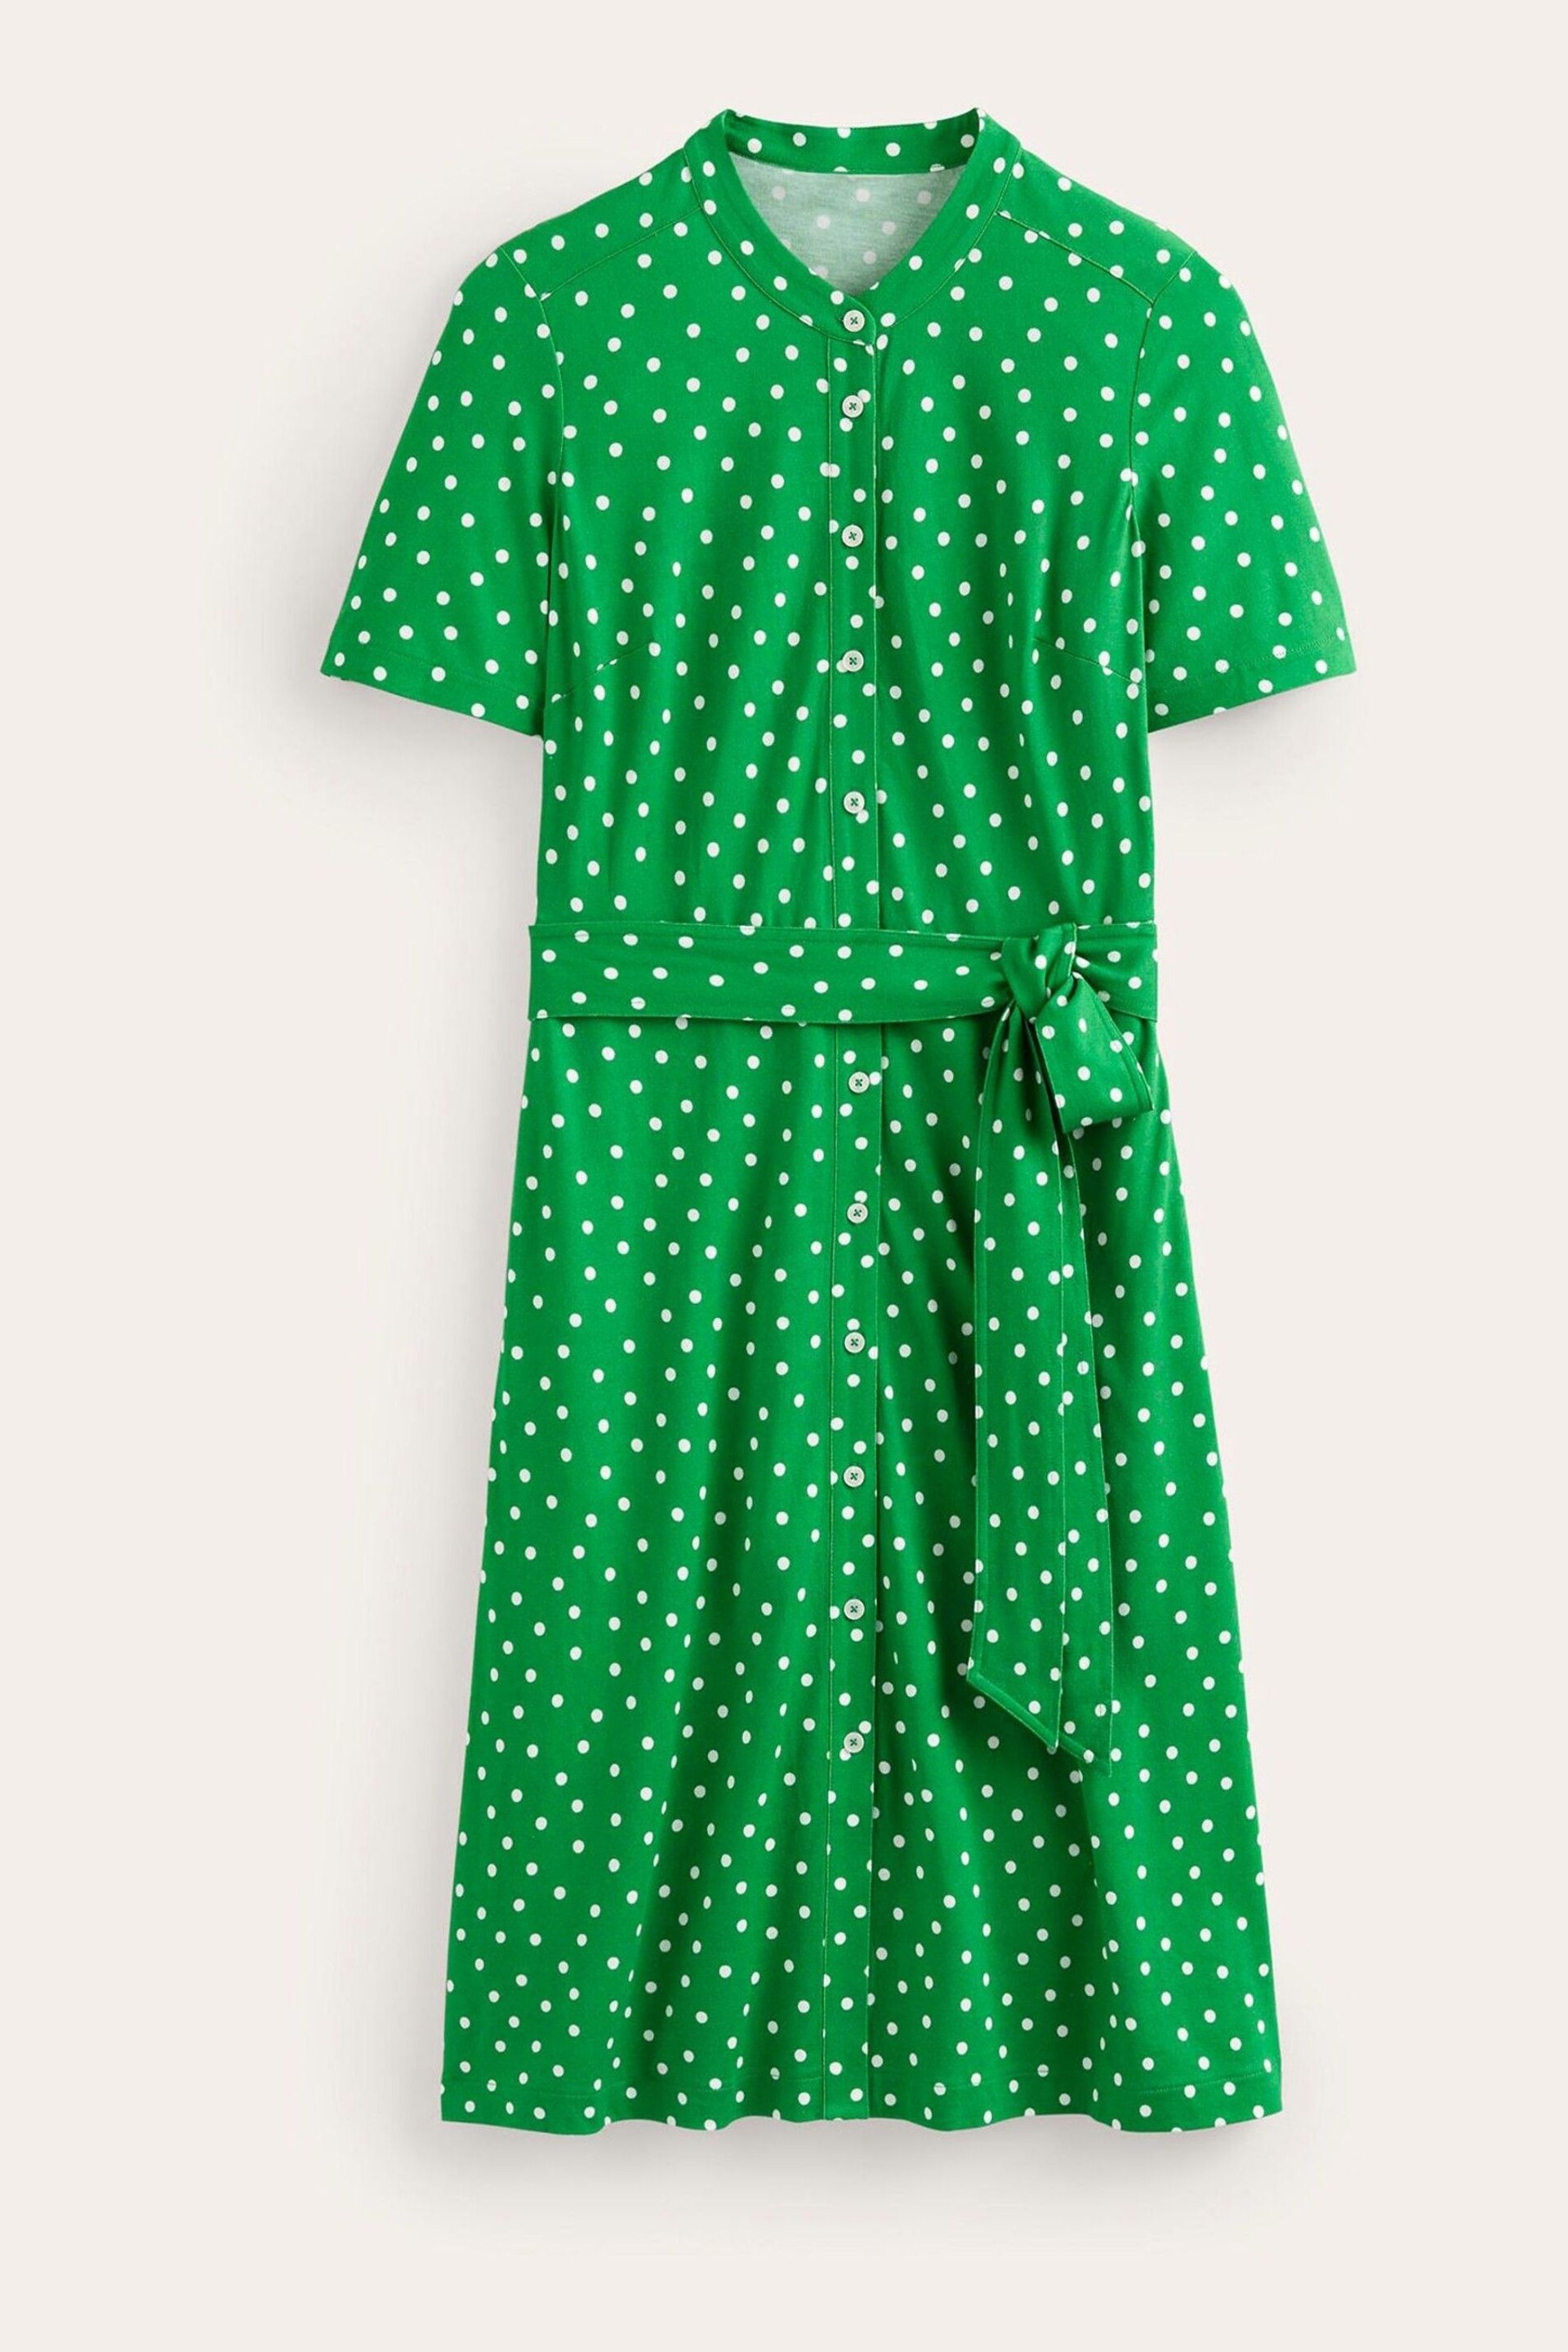 Boden Green Petite Julia Short Sleeve Shirt Dress - Image 5 of 5